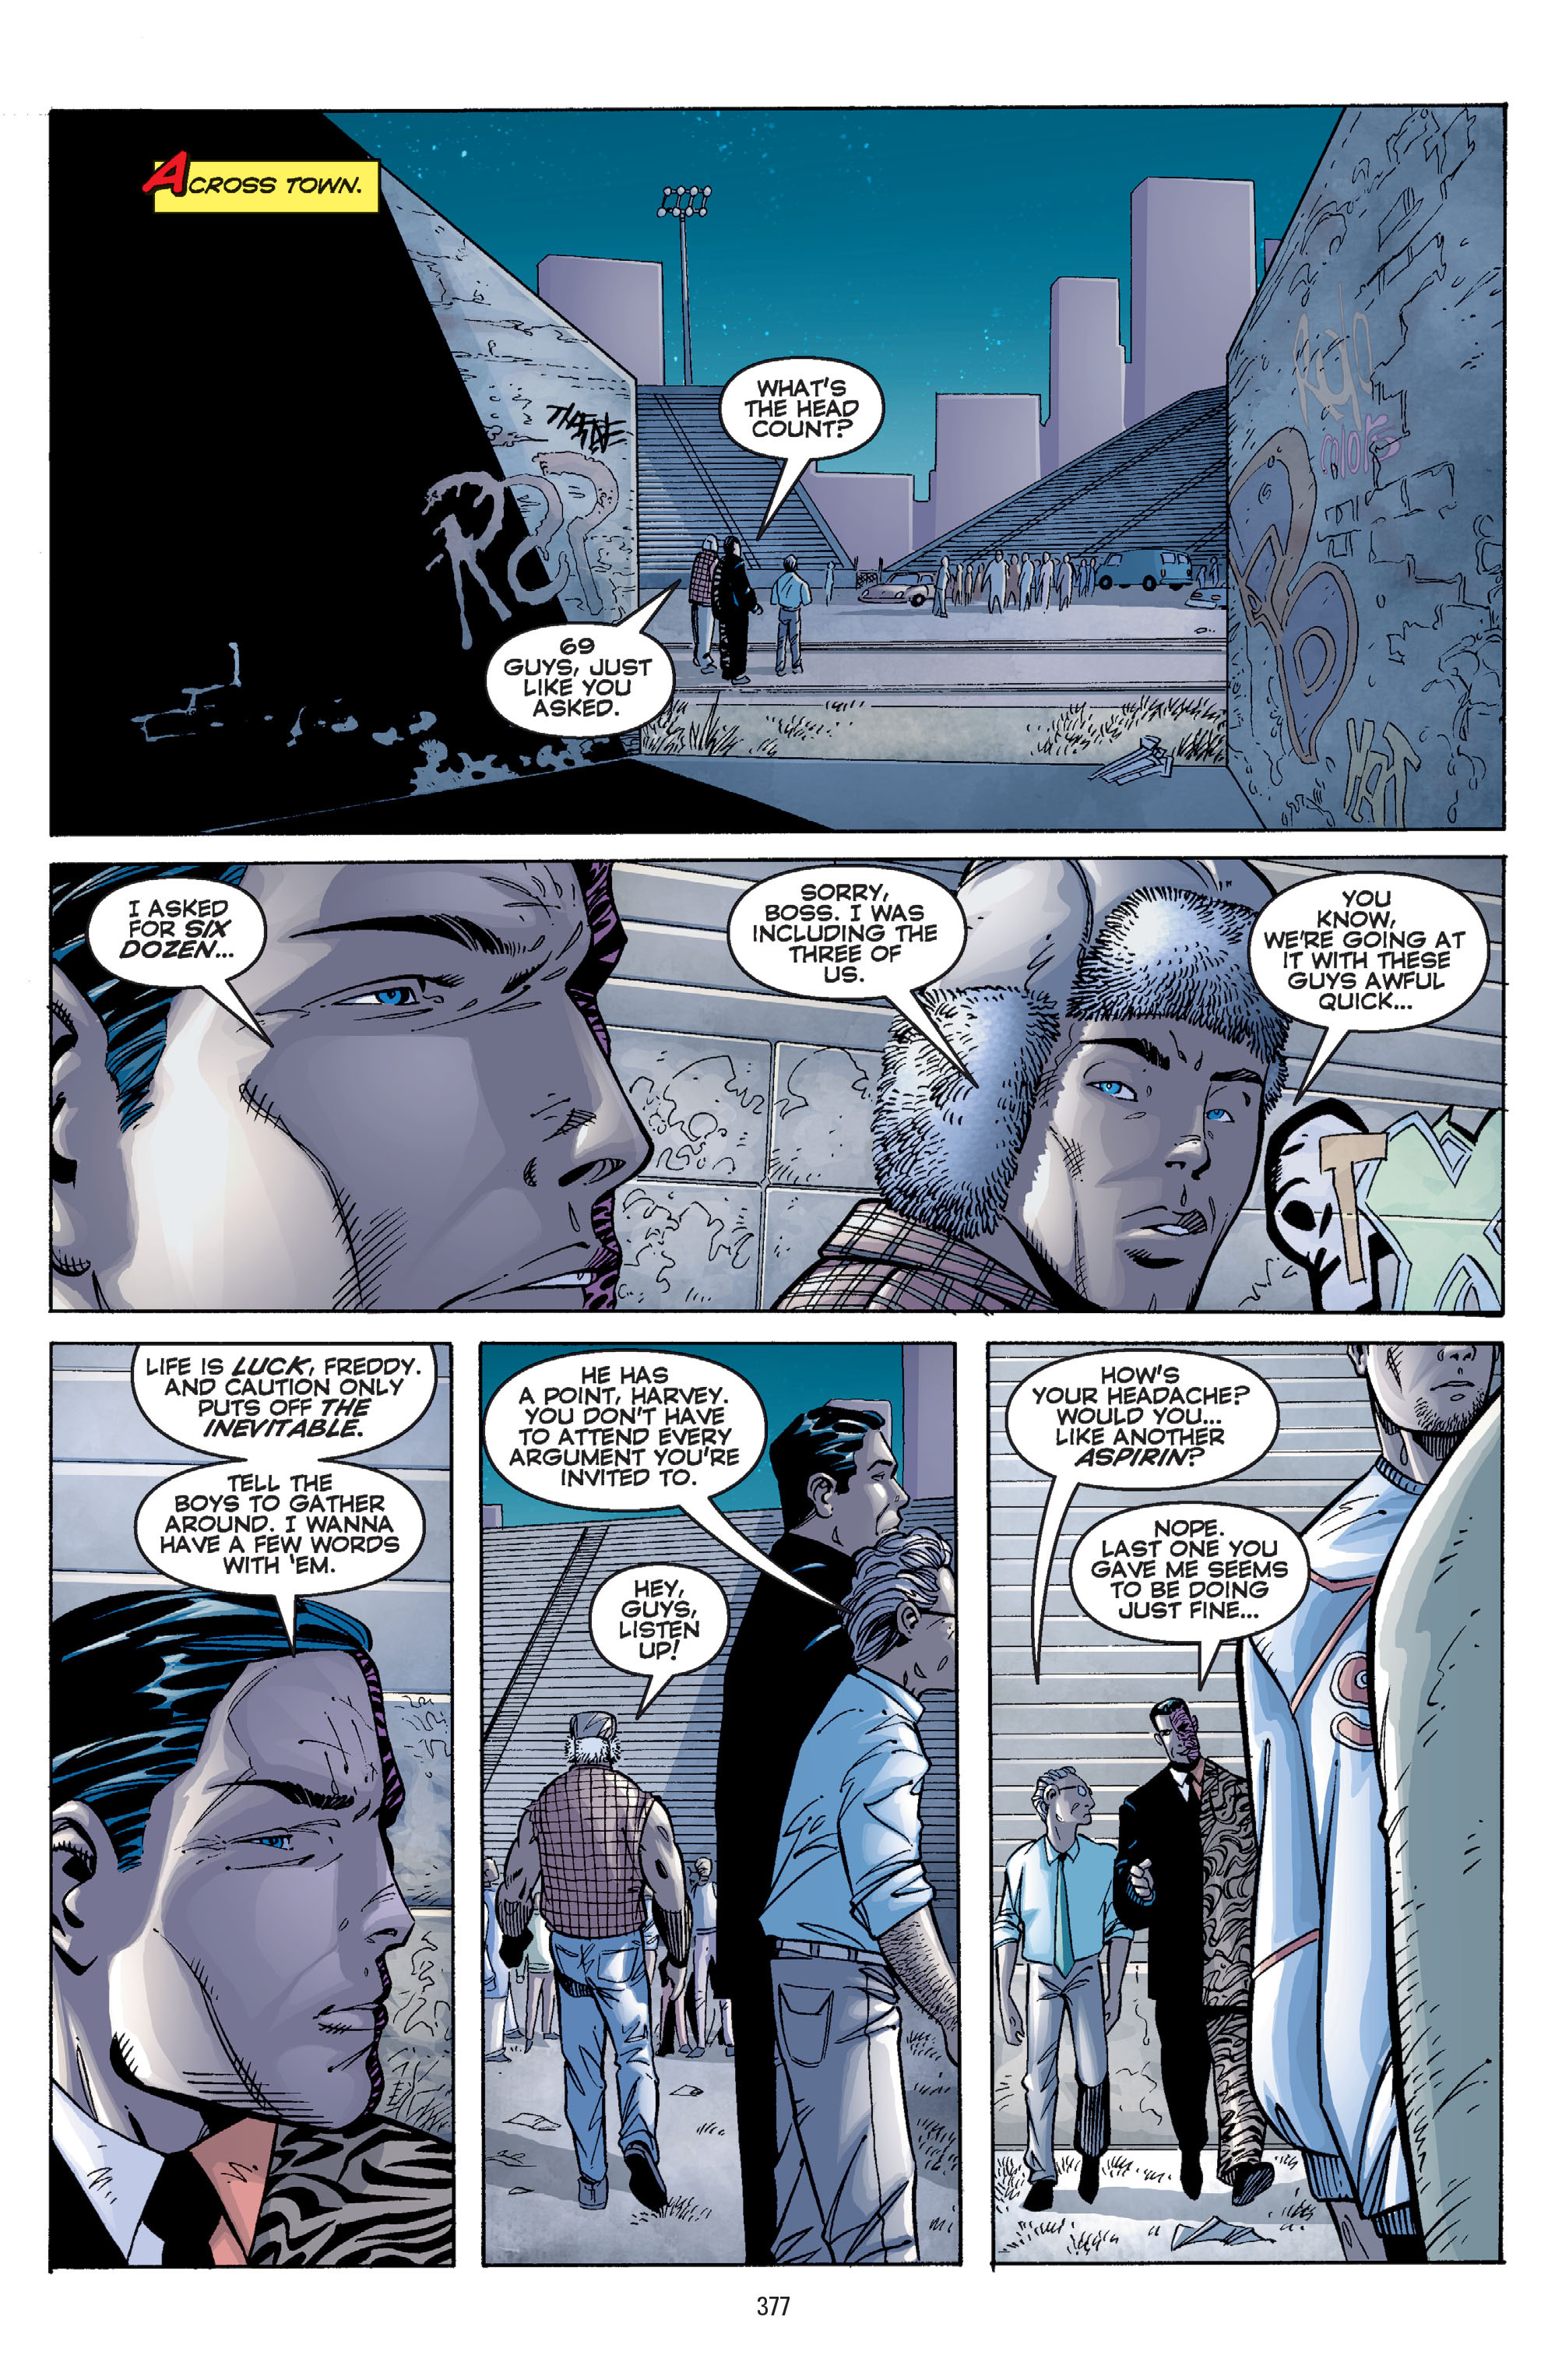 DC Comics/Dark Horse Comics: Justice League Full #1 - English 367